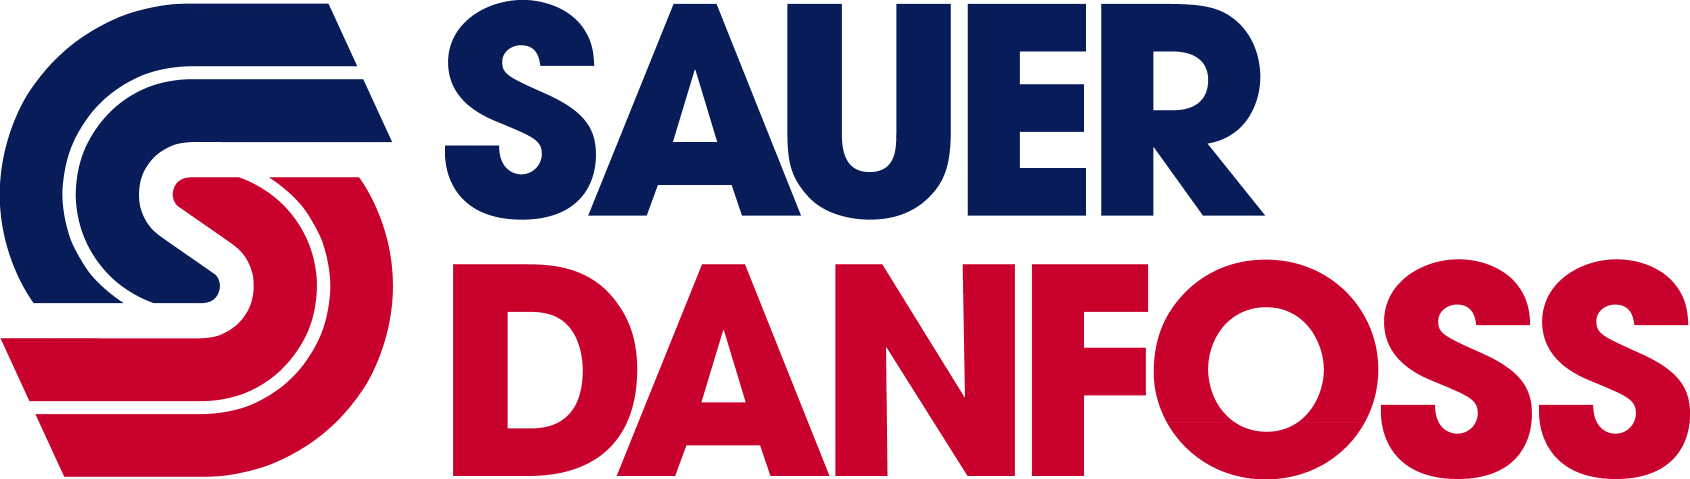 Sauer Danfoss logo